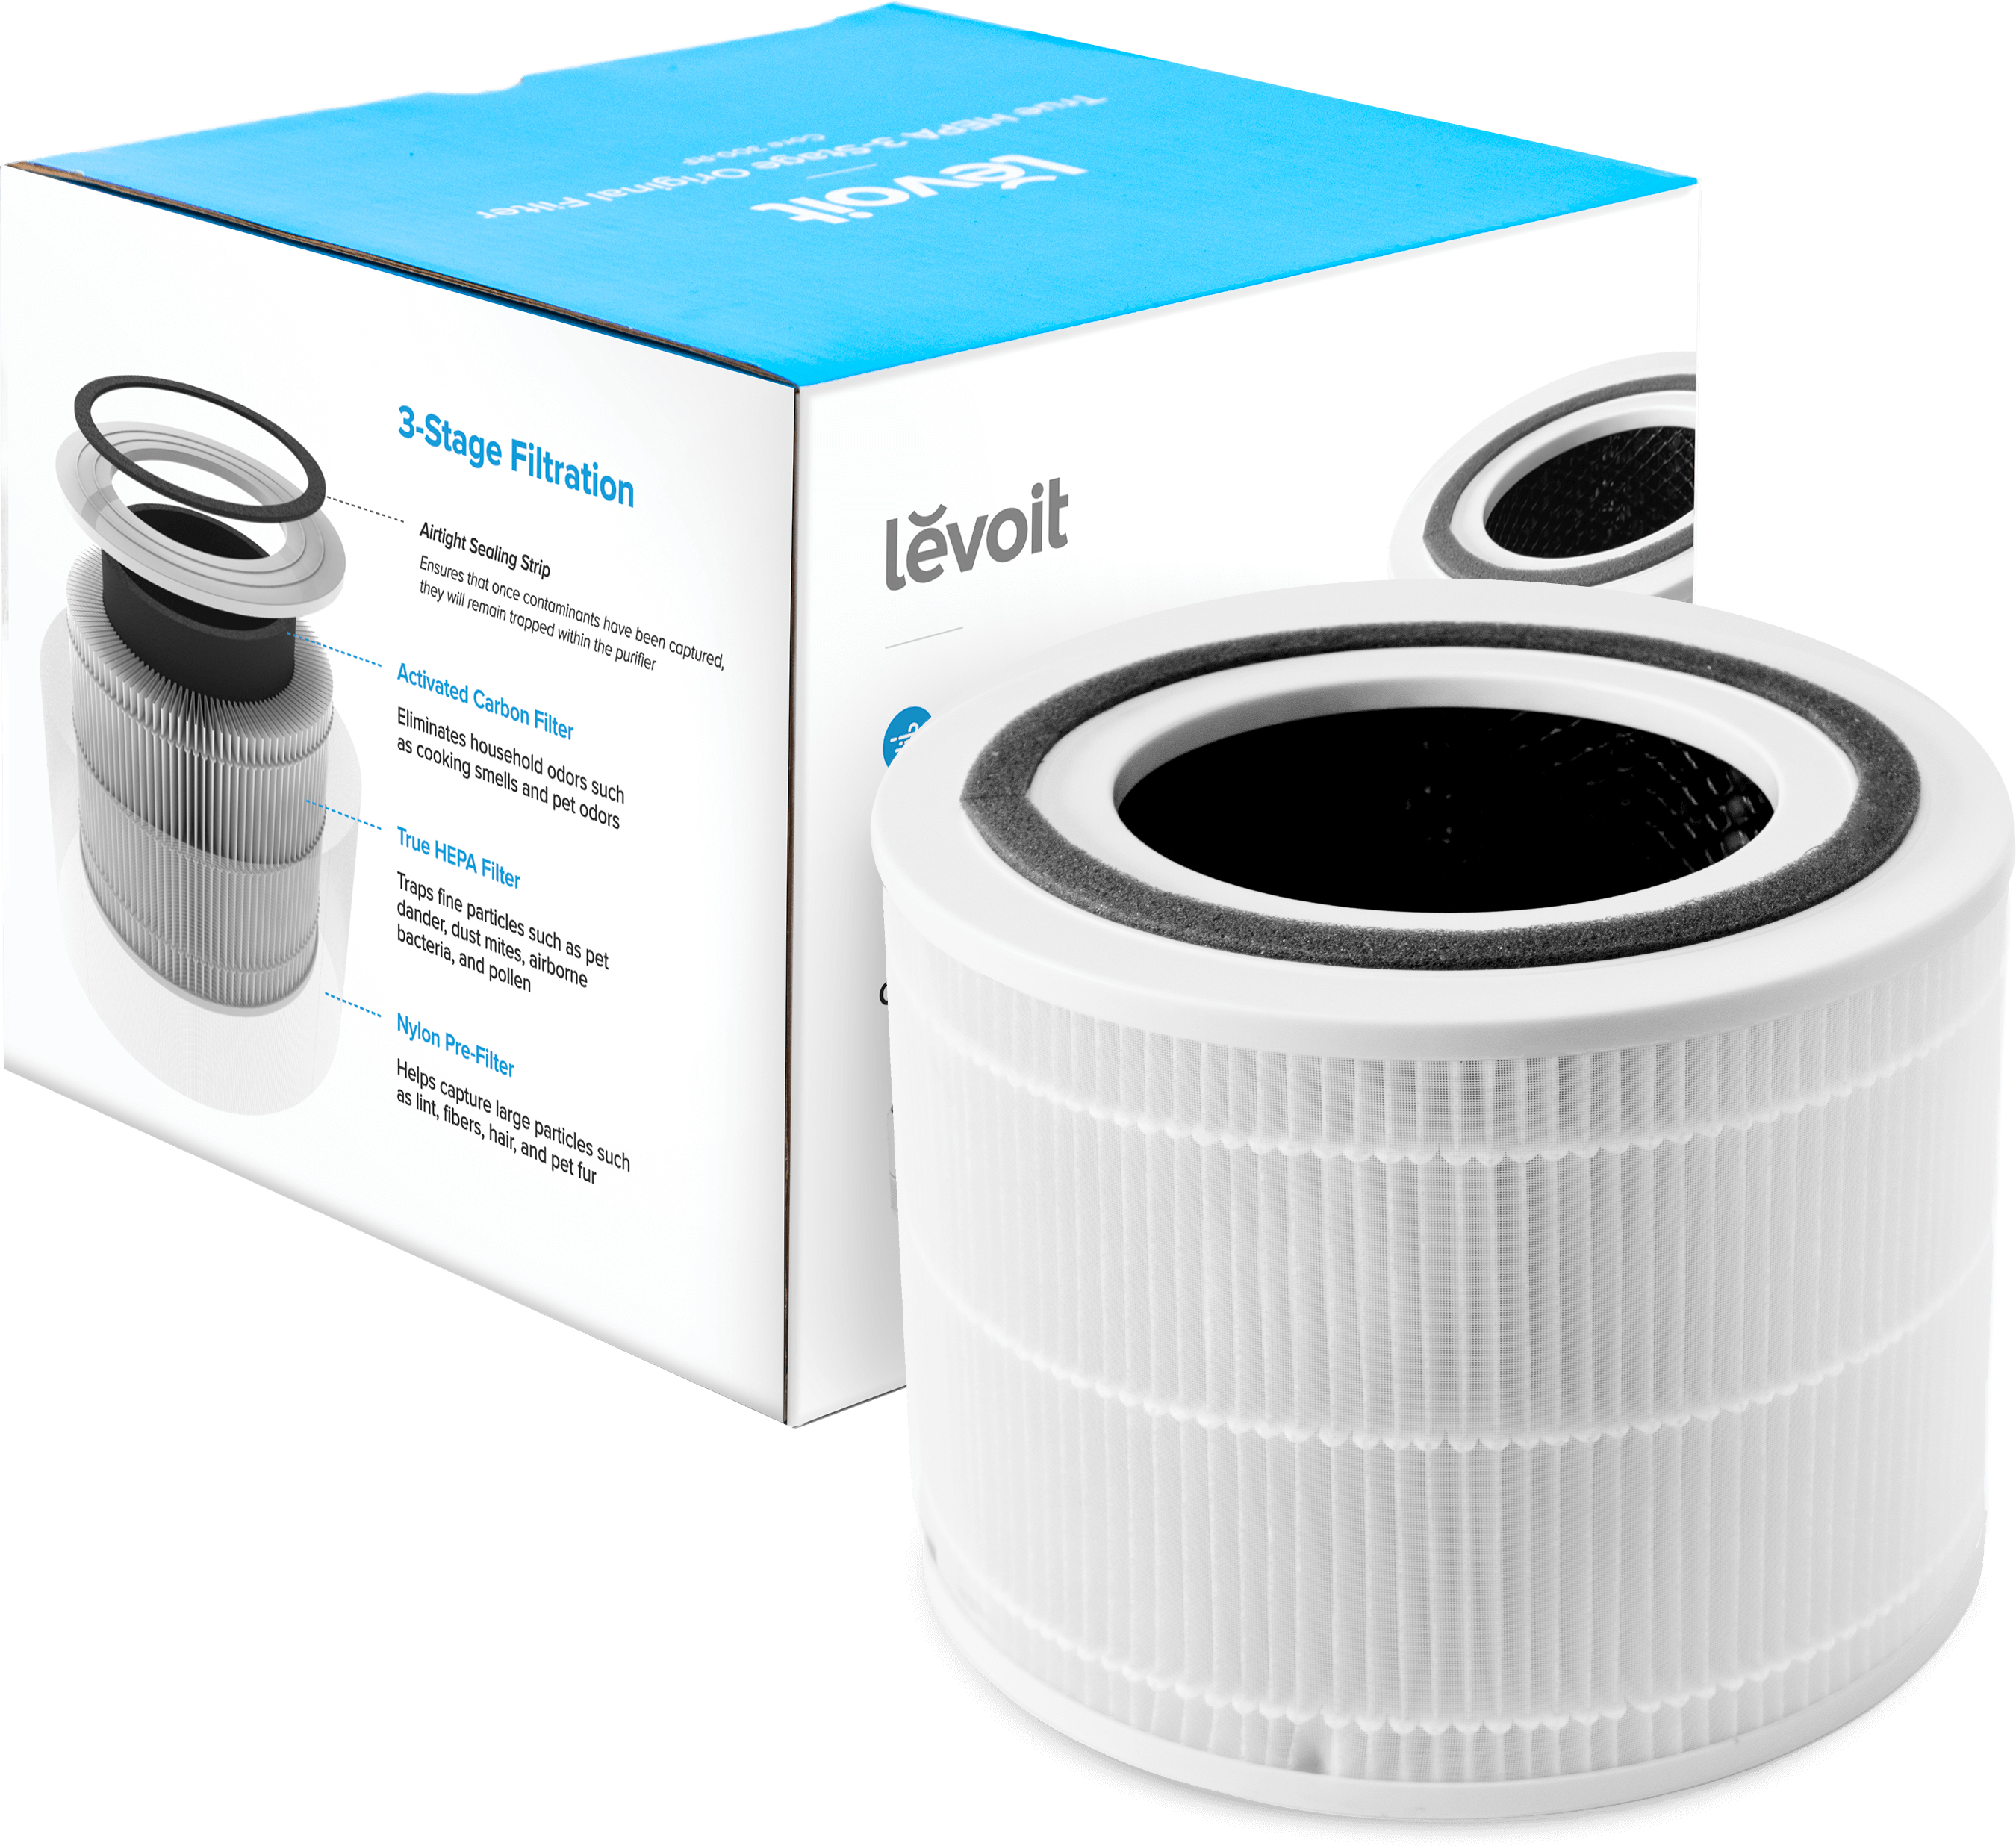 Купить фильтр для увлажнителя воздуха Levoit Air Cleaner Filter Core 300 True HEPA 3-Stage в Киеве